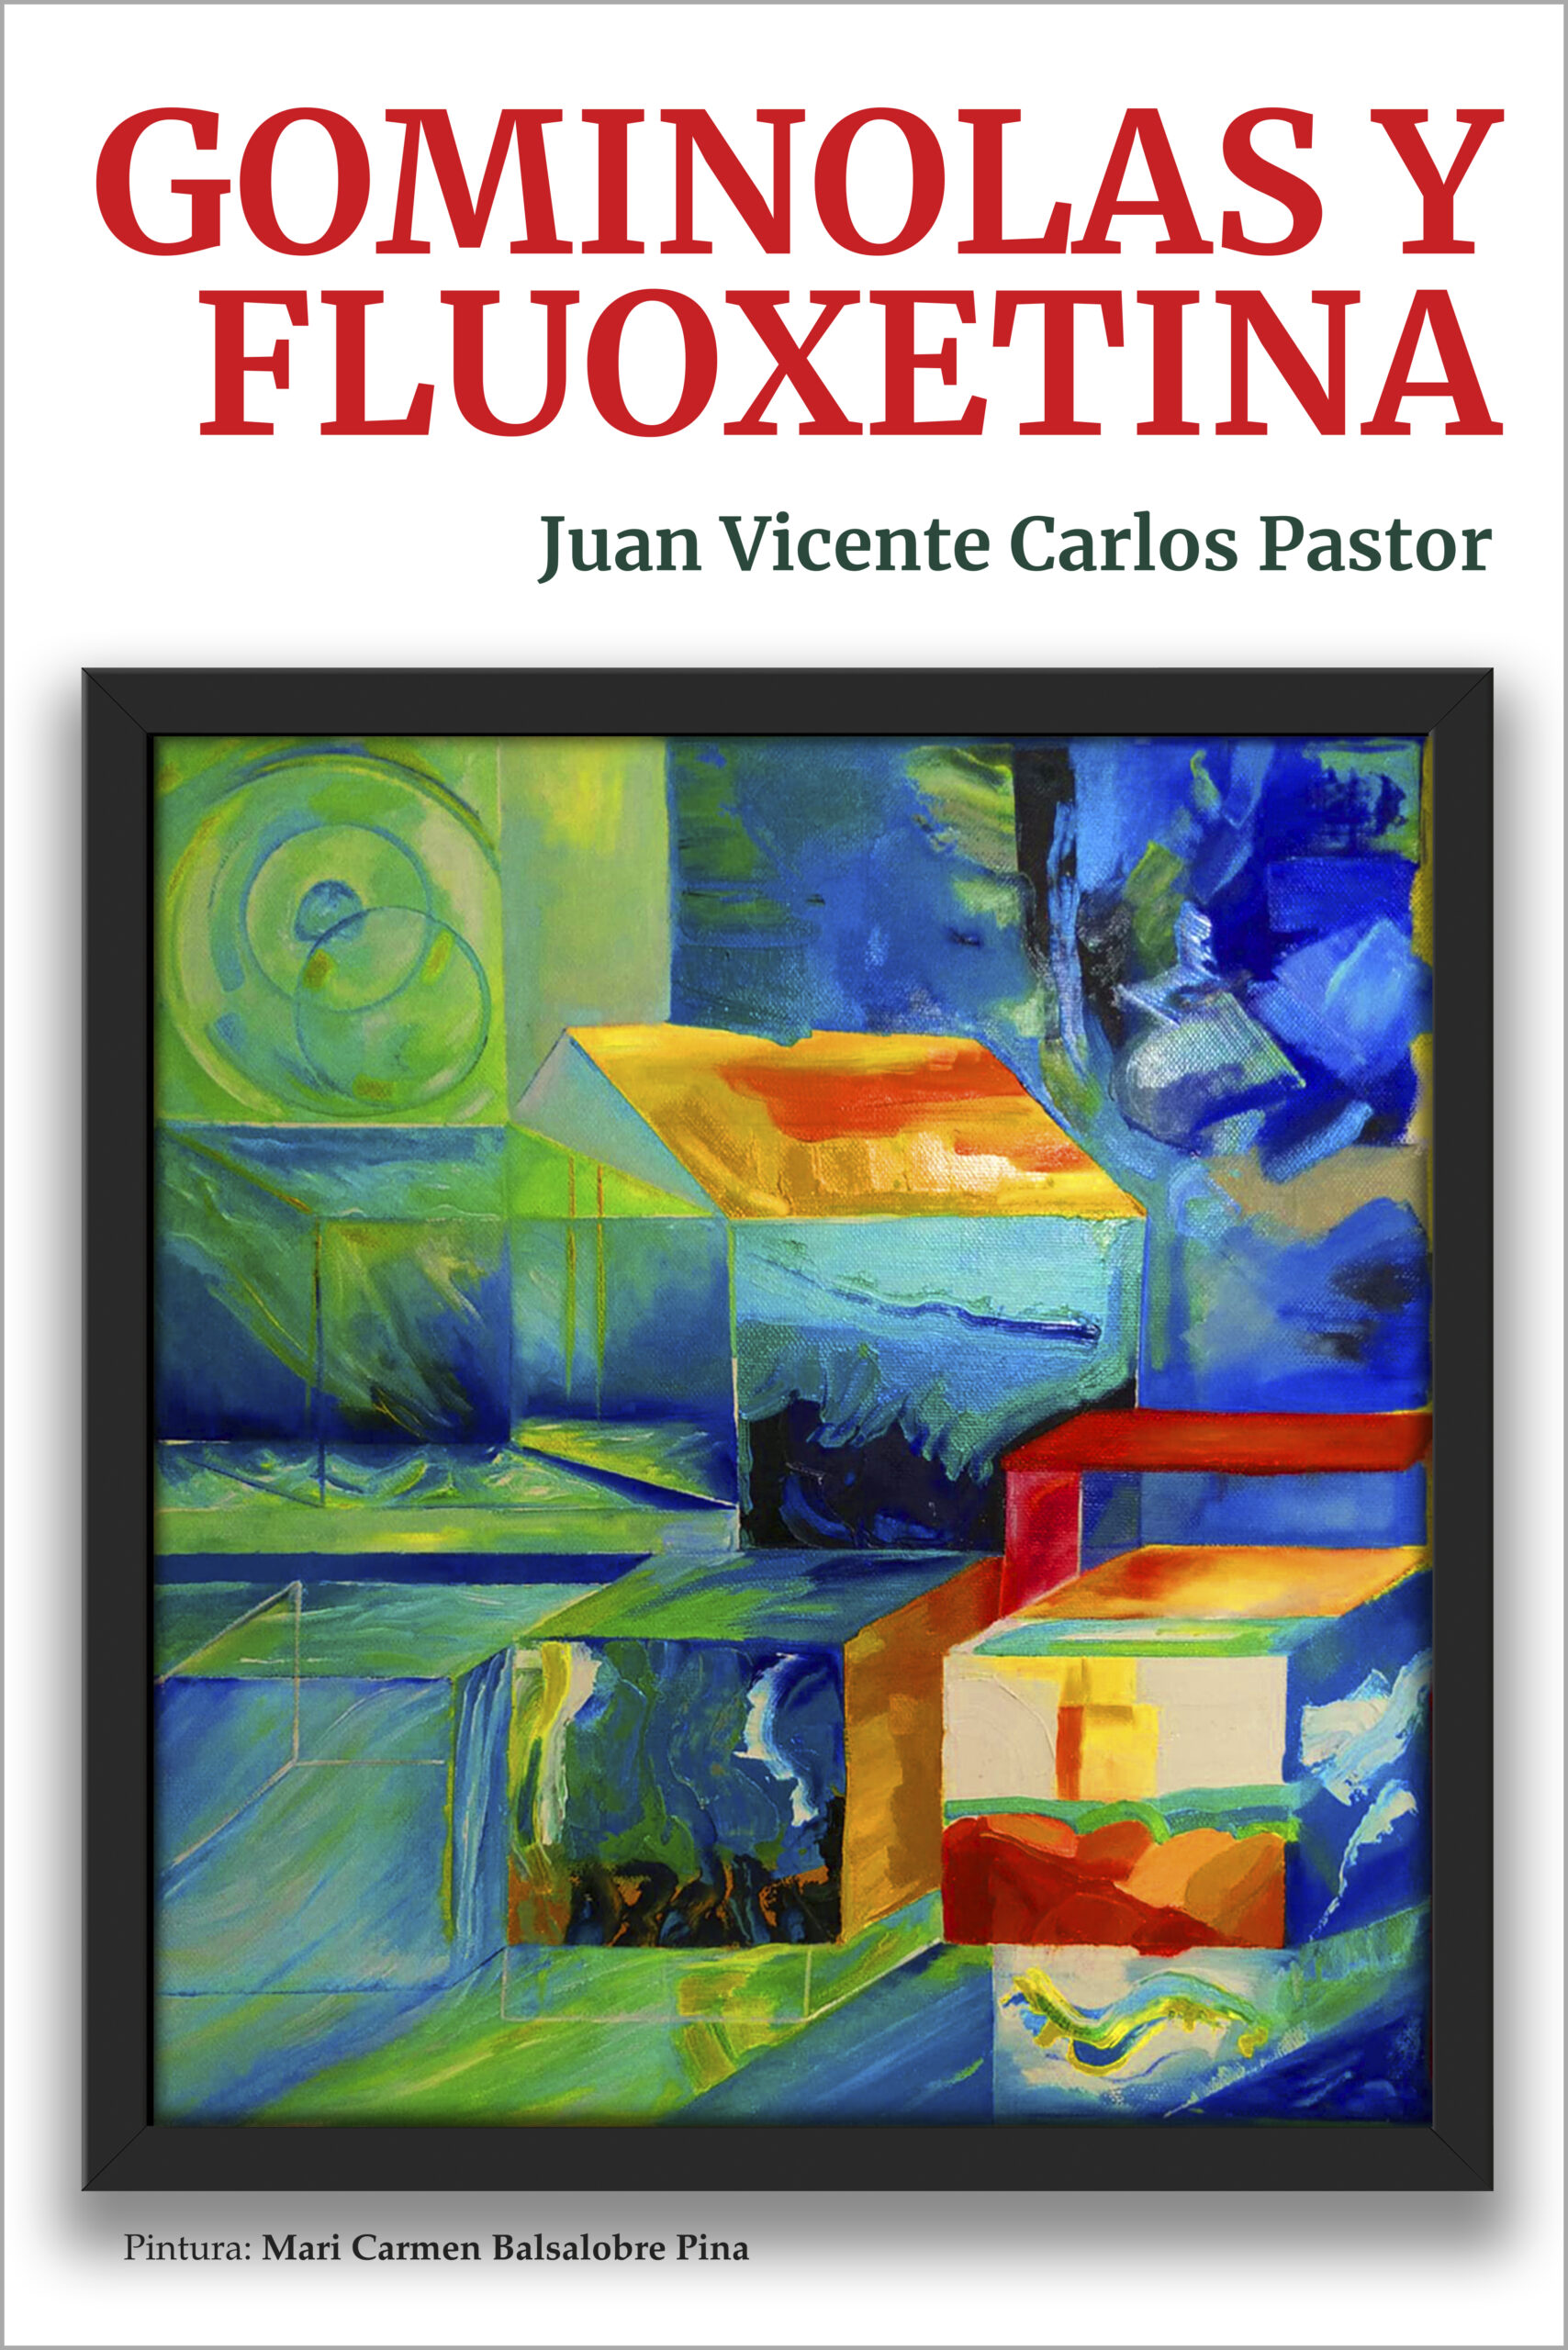 Gominolas y fluoxetinam, de Juan Vicente Carlos Pastor